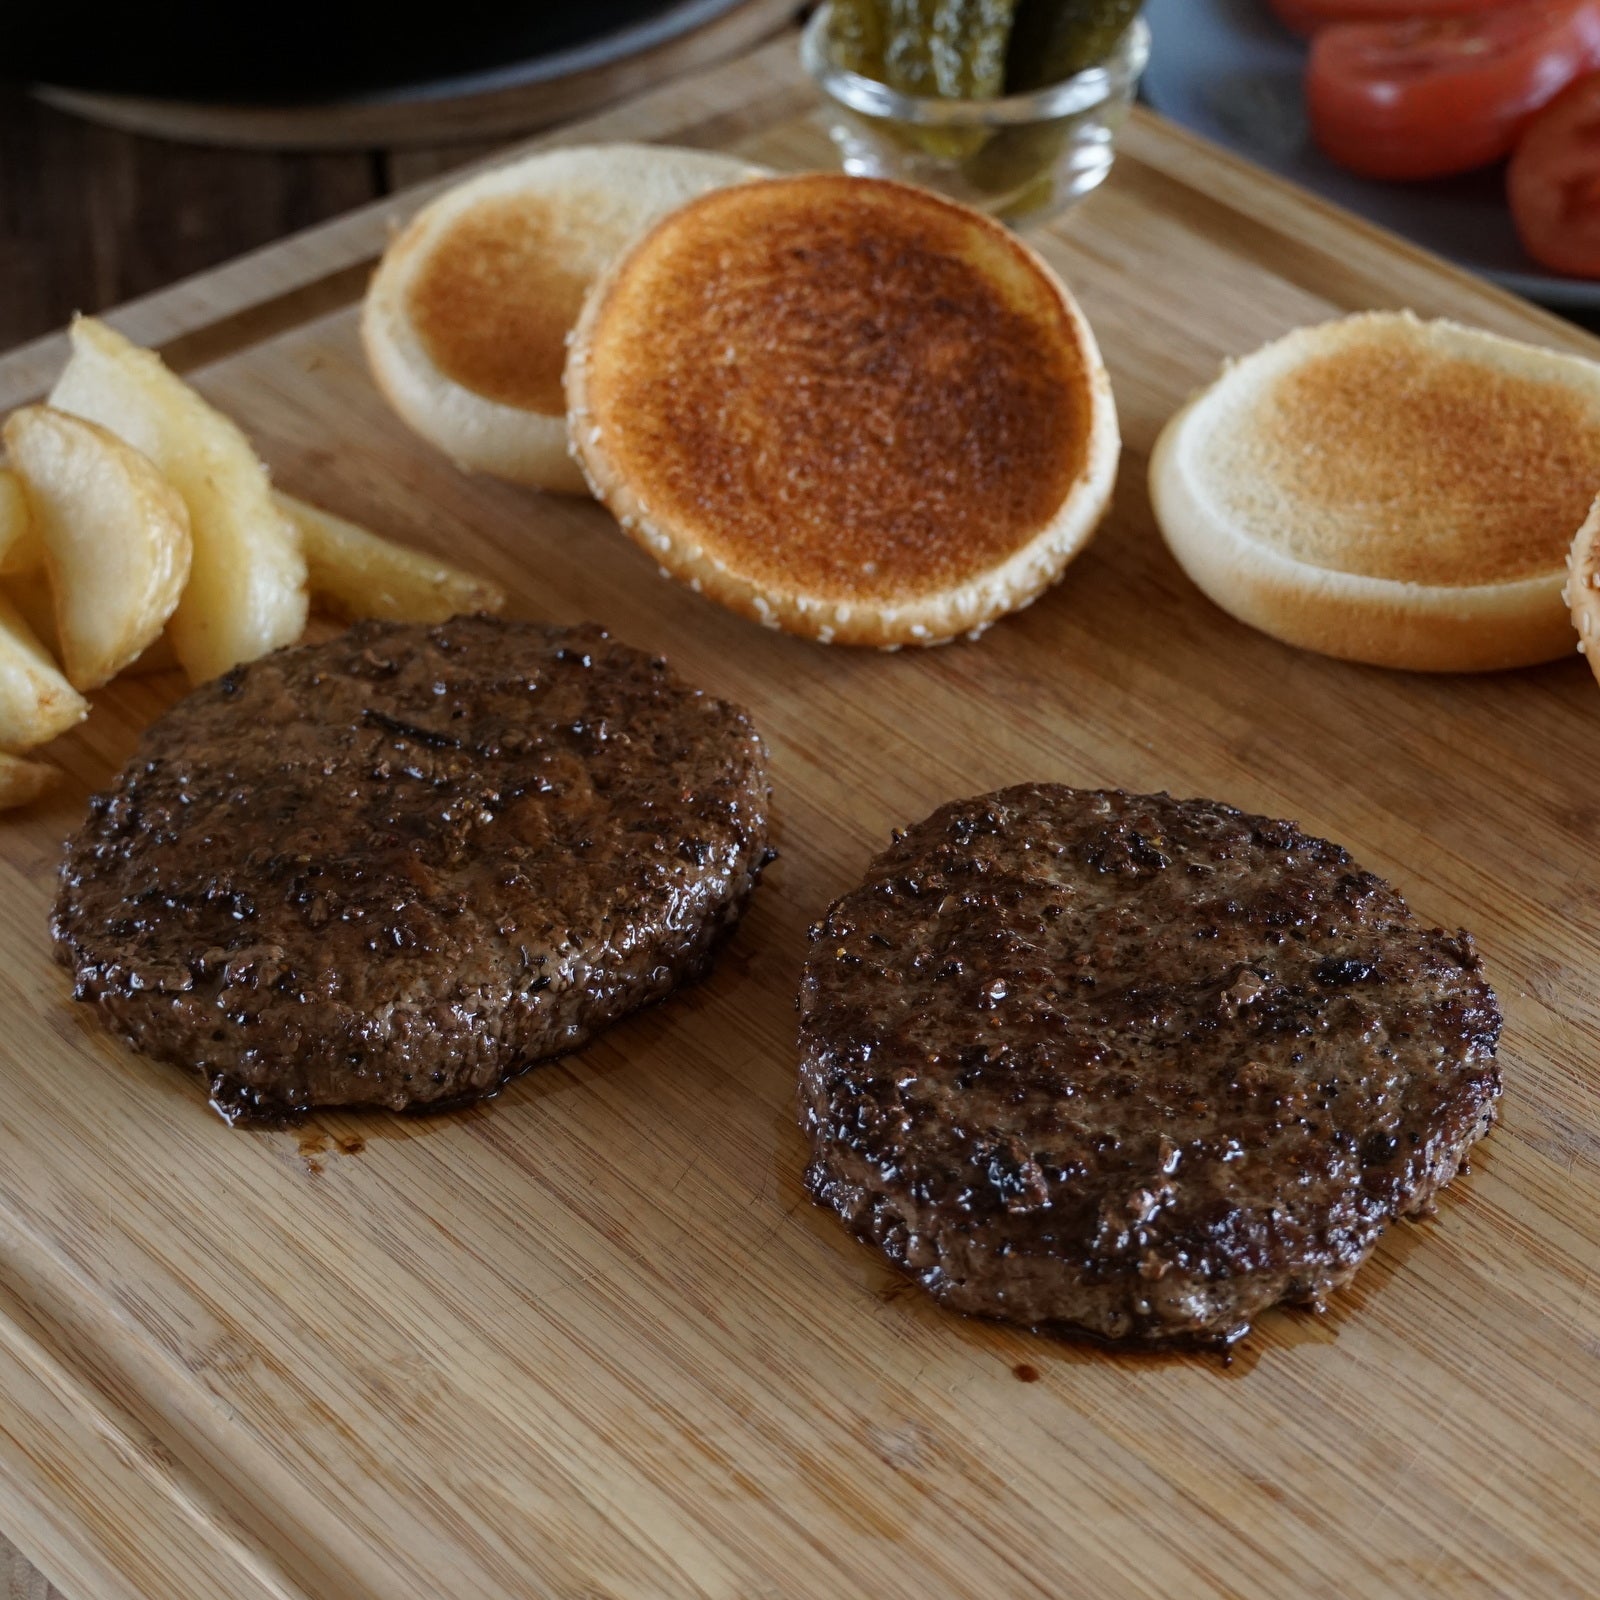 モーガン牧場ビーフ USDA チョイス ハンバーガーパティ 最高品質 牛肉 100% 放牧牛 (2枚) ホライズンファームズ